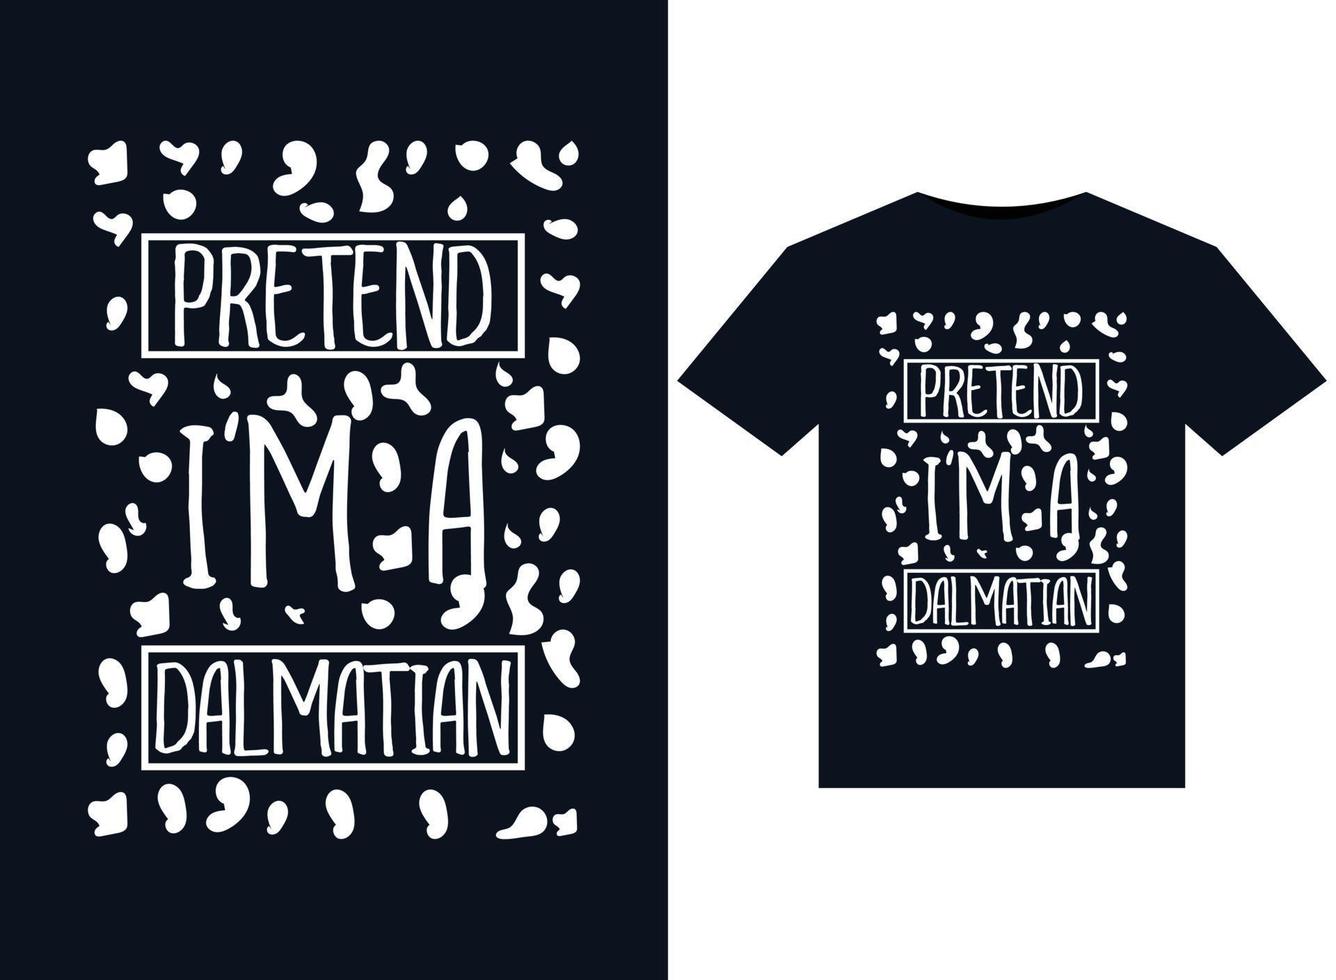 faire semblant d'être un dalmatien illustrations pour la conception de t-shirts prêts à imprimer vecteur